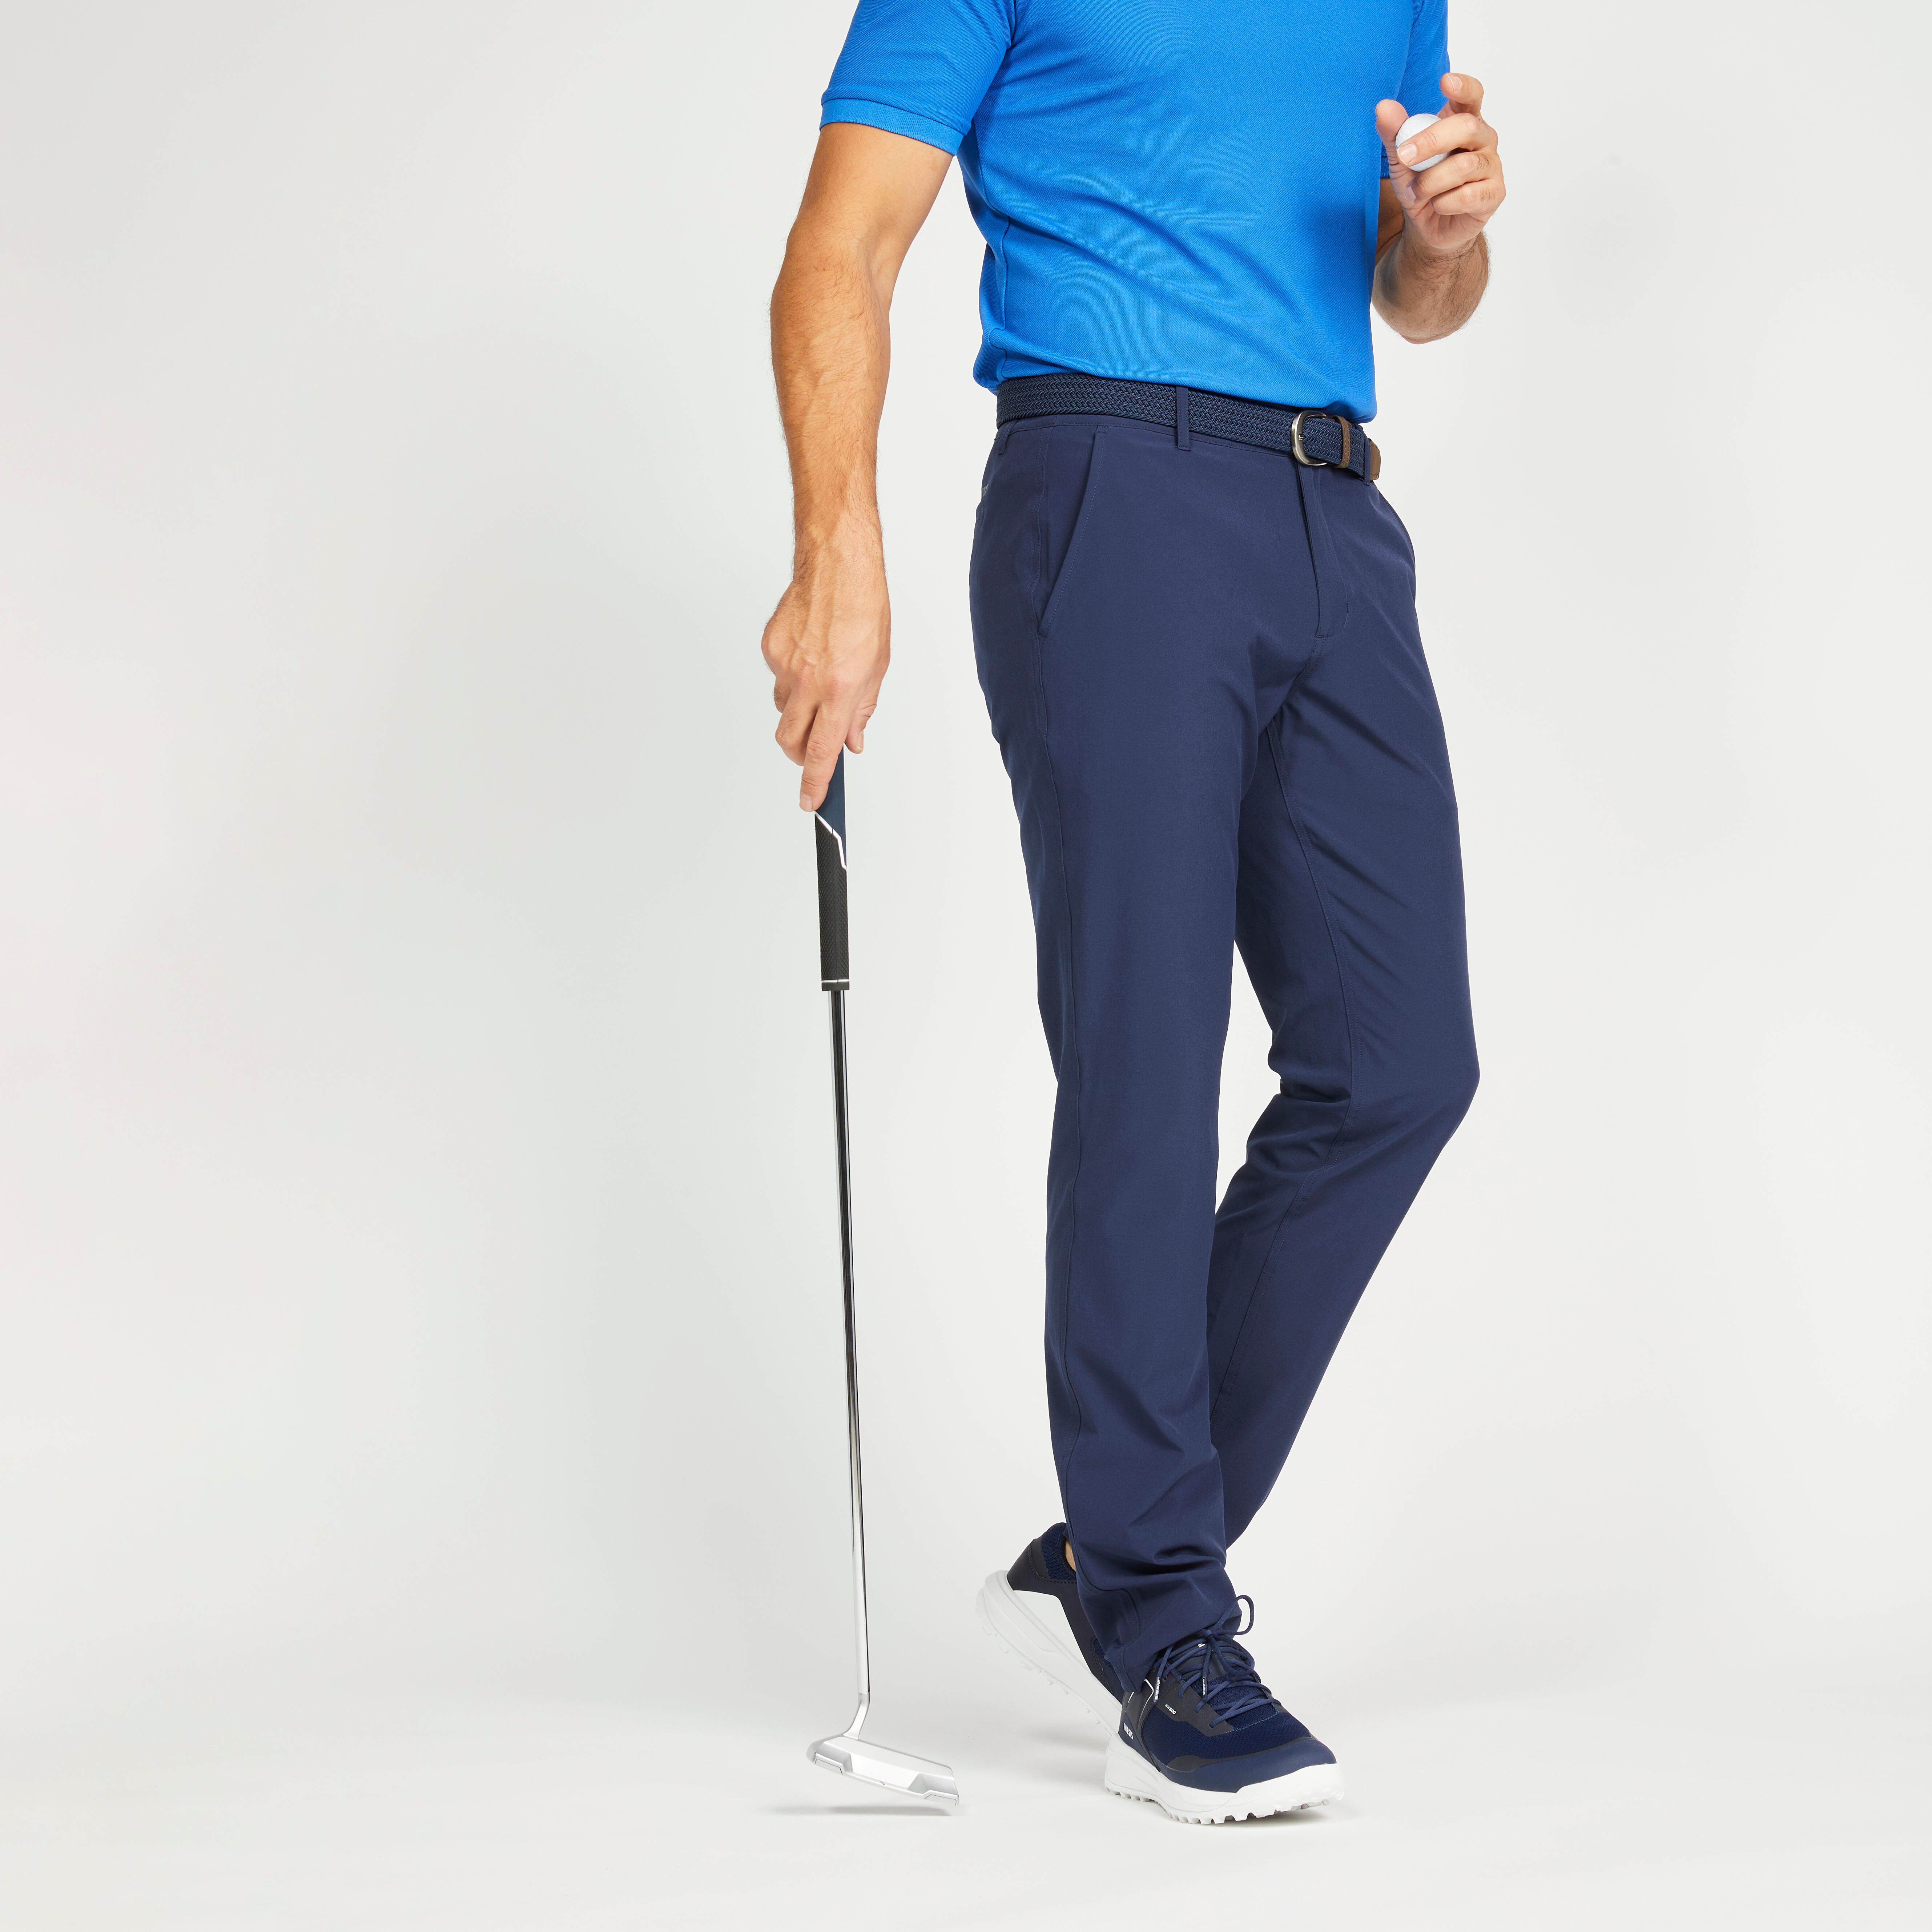 Men's Golf Joggers In Navy, Sleek & Flexible